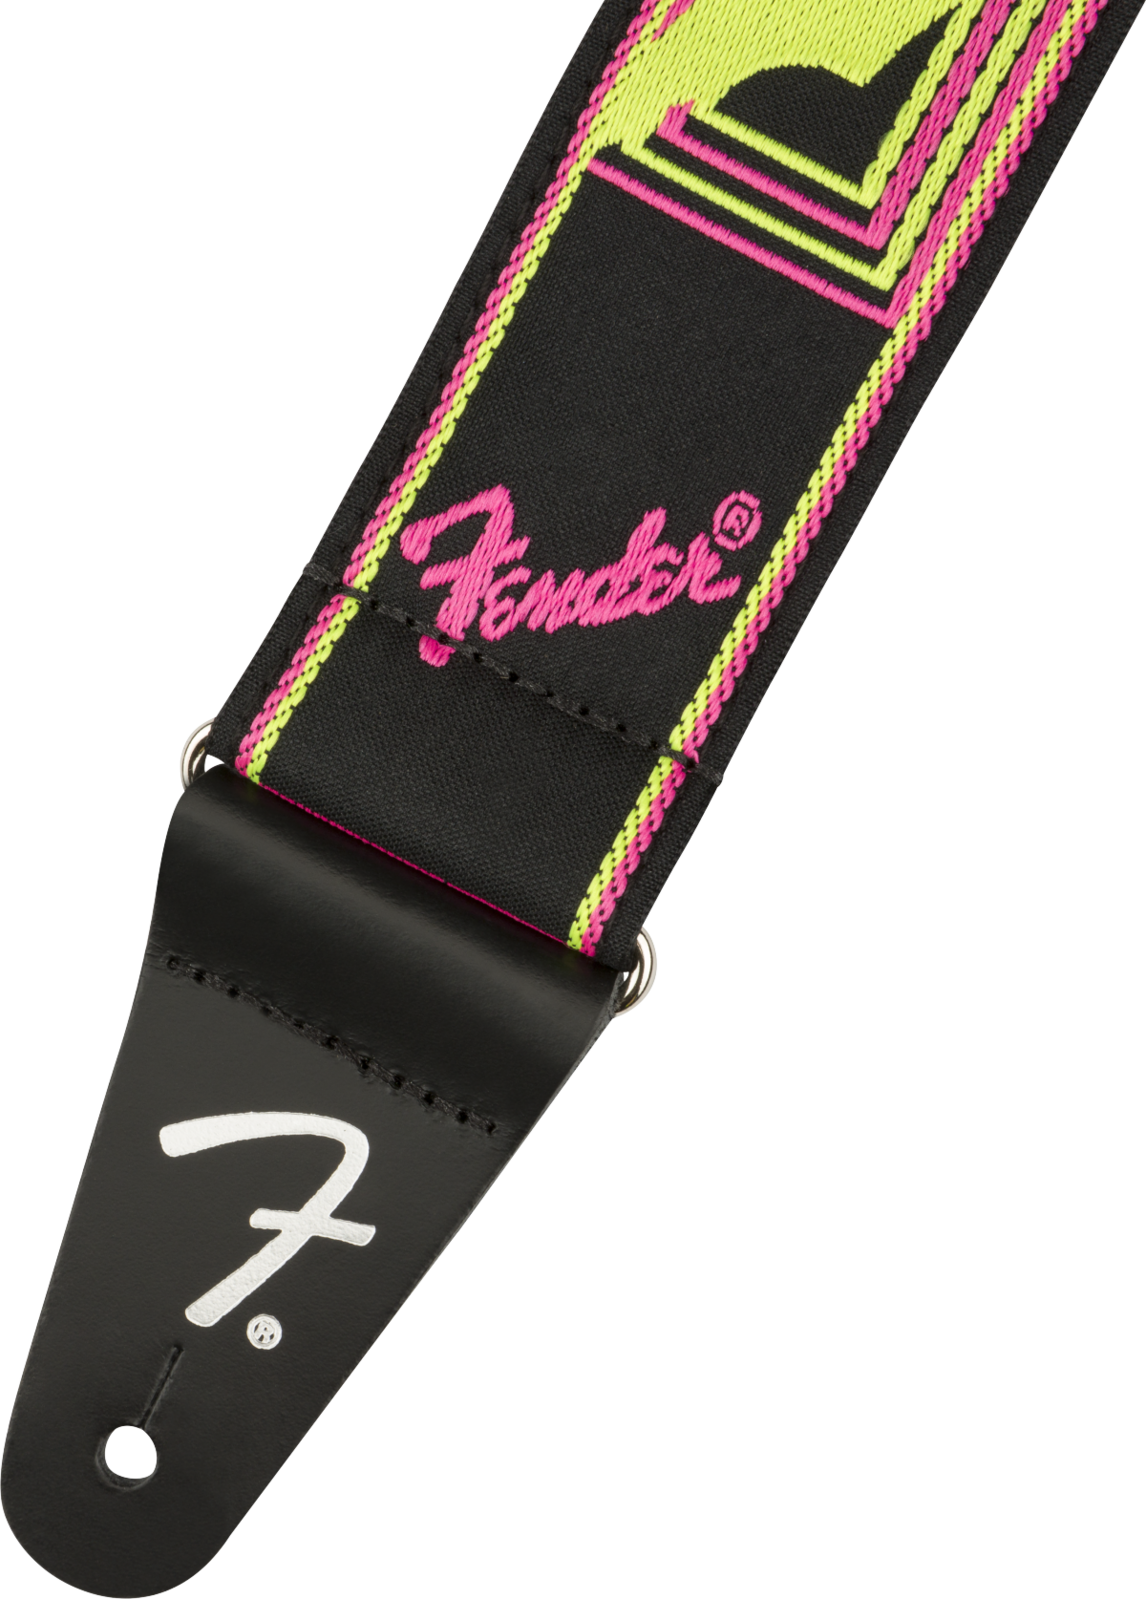 Fender 2" Neon Monogrammed Yellow/Pink Strap